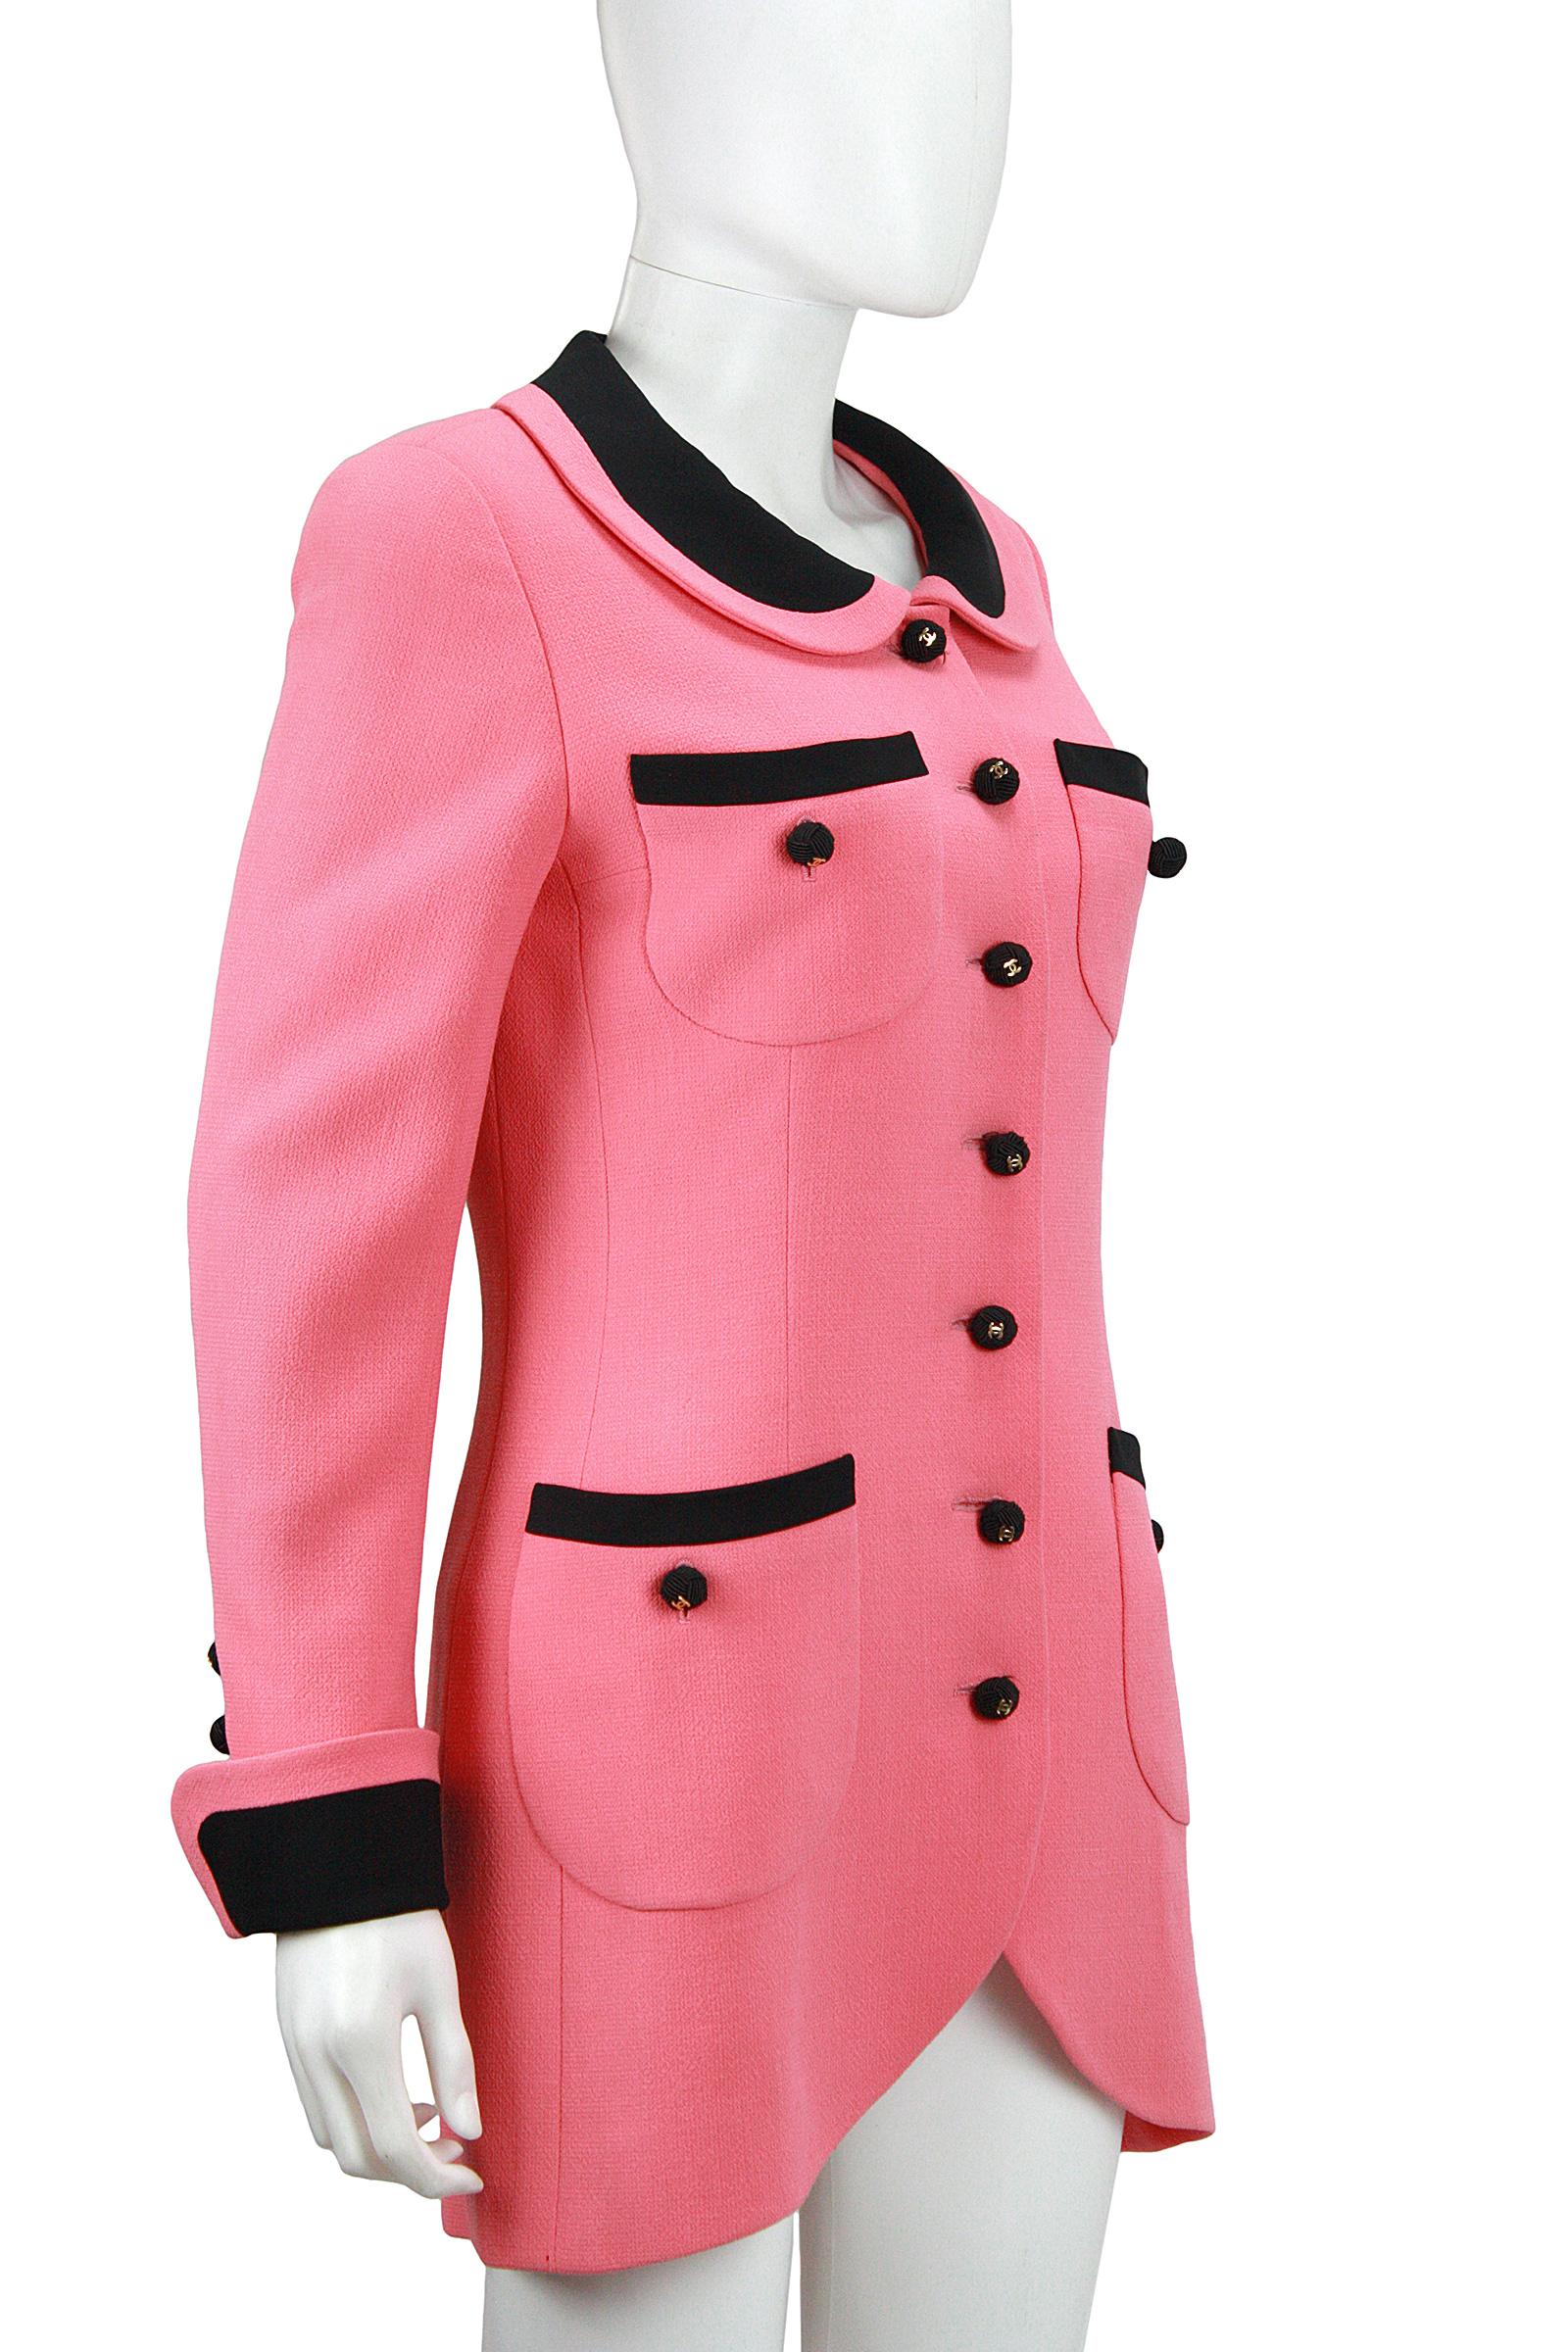 pink blazer with black trim